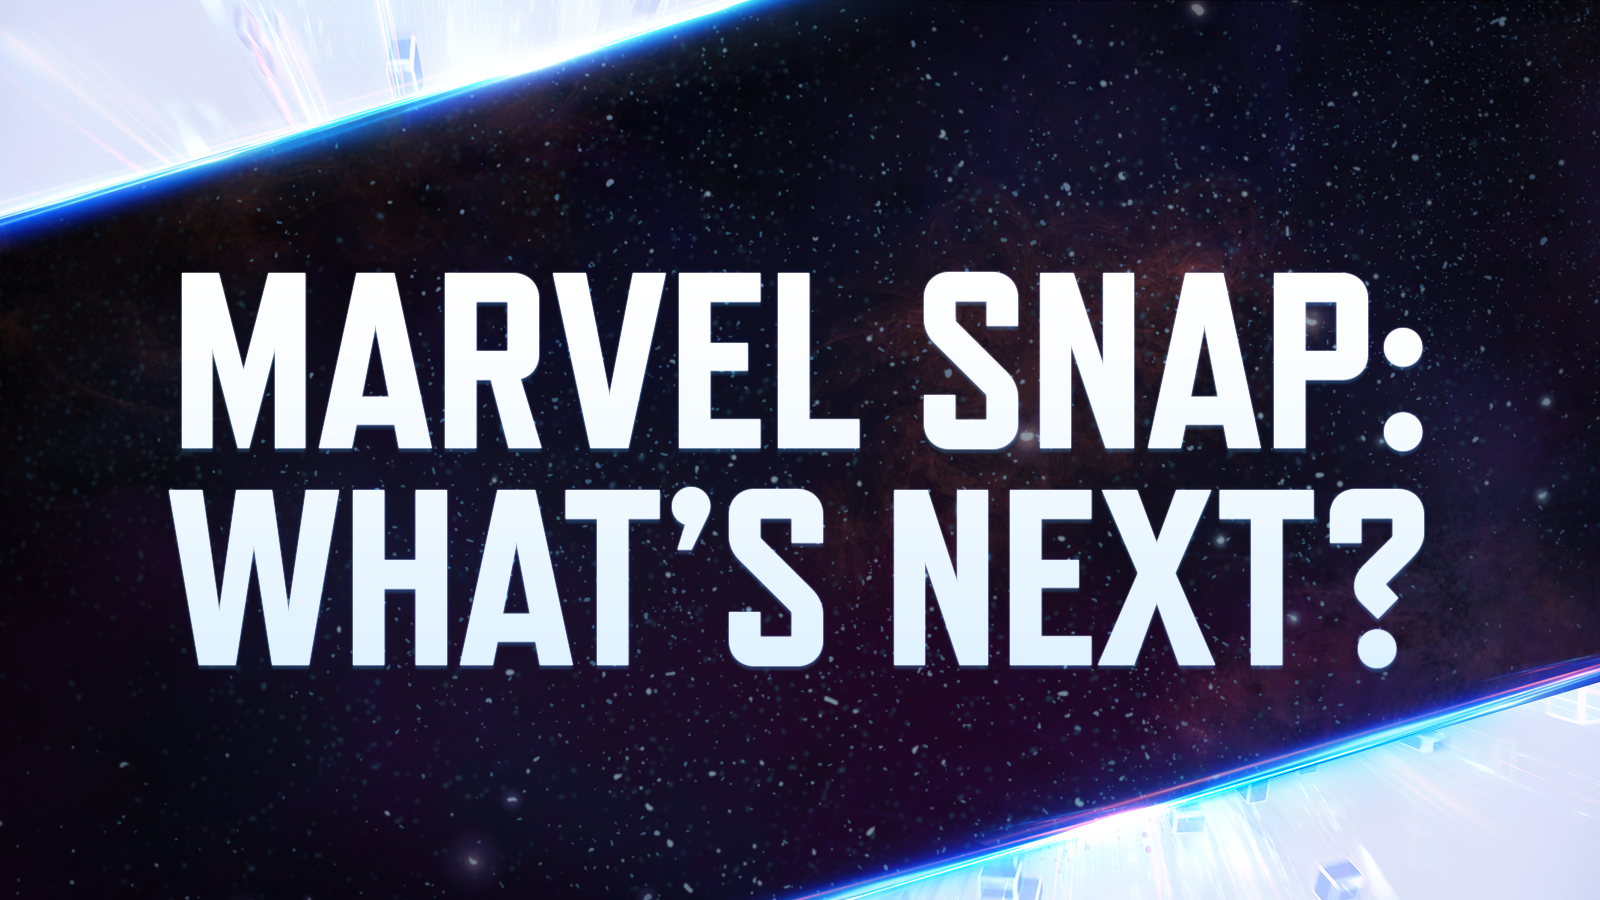 Marvel Snap Zone on X: #MarvelSnap November 9 OTA Updates